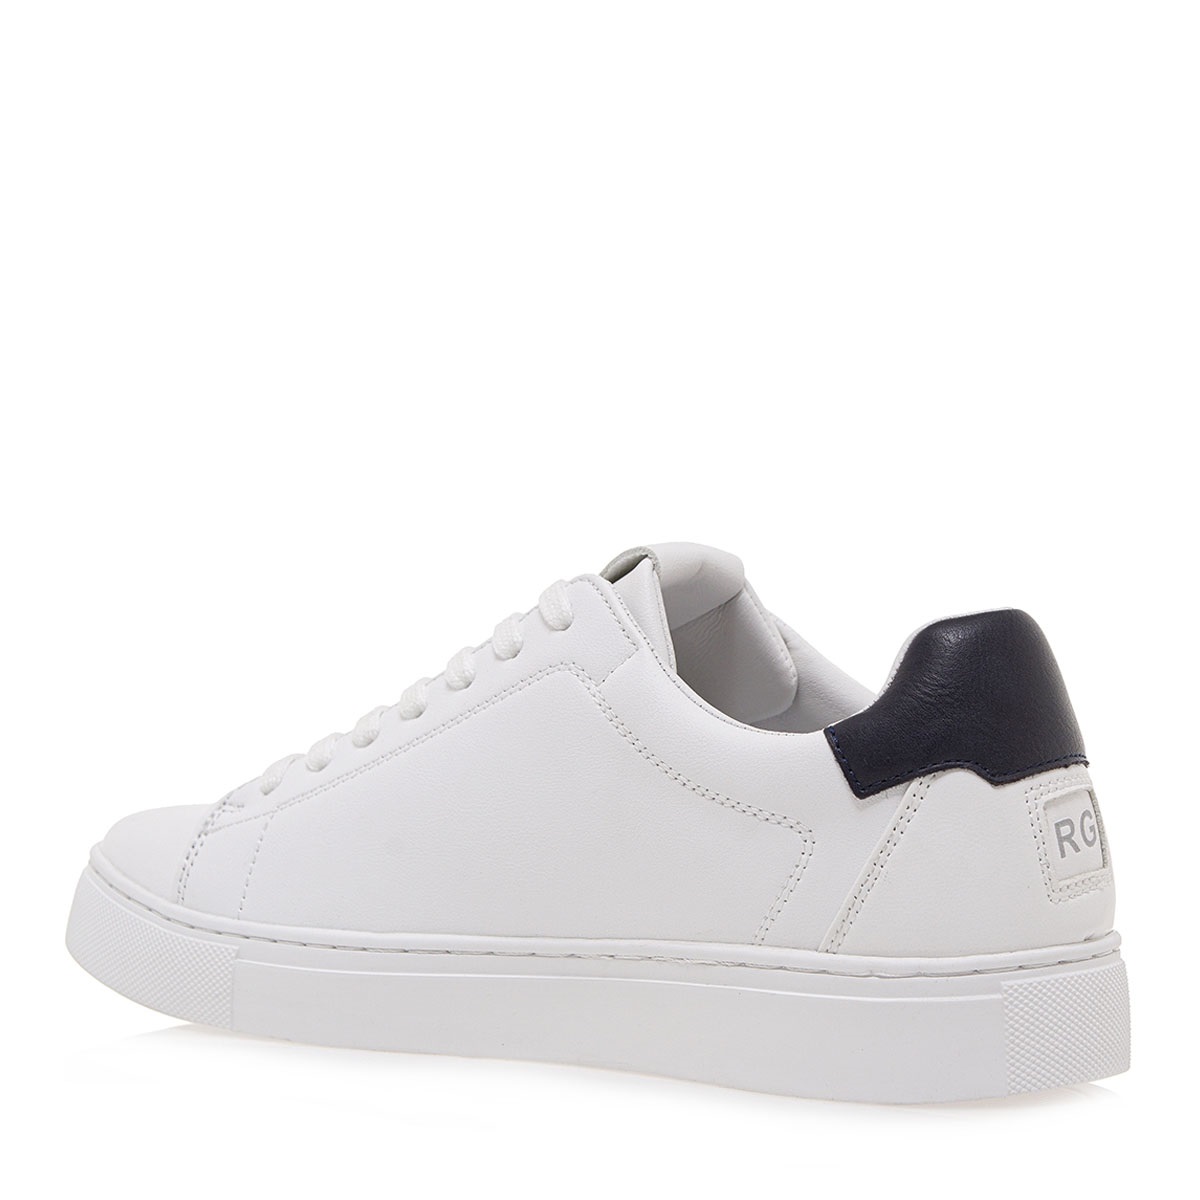 Ανδρικό Sneaker σε λευκό χρώμα Renato Garini S57001081174